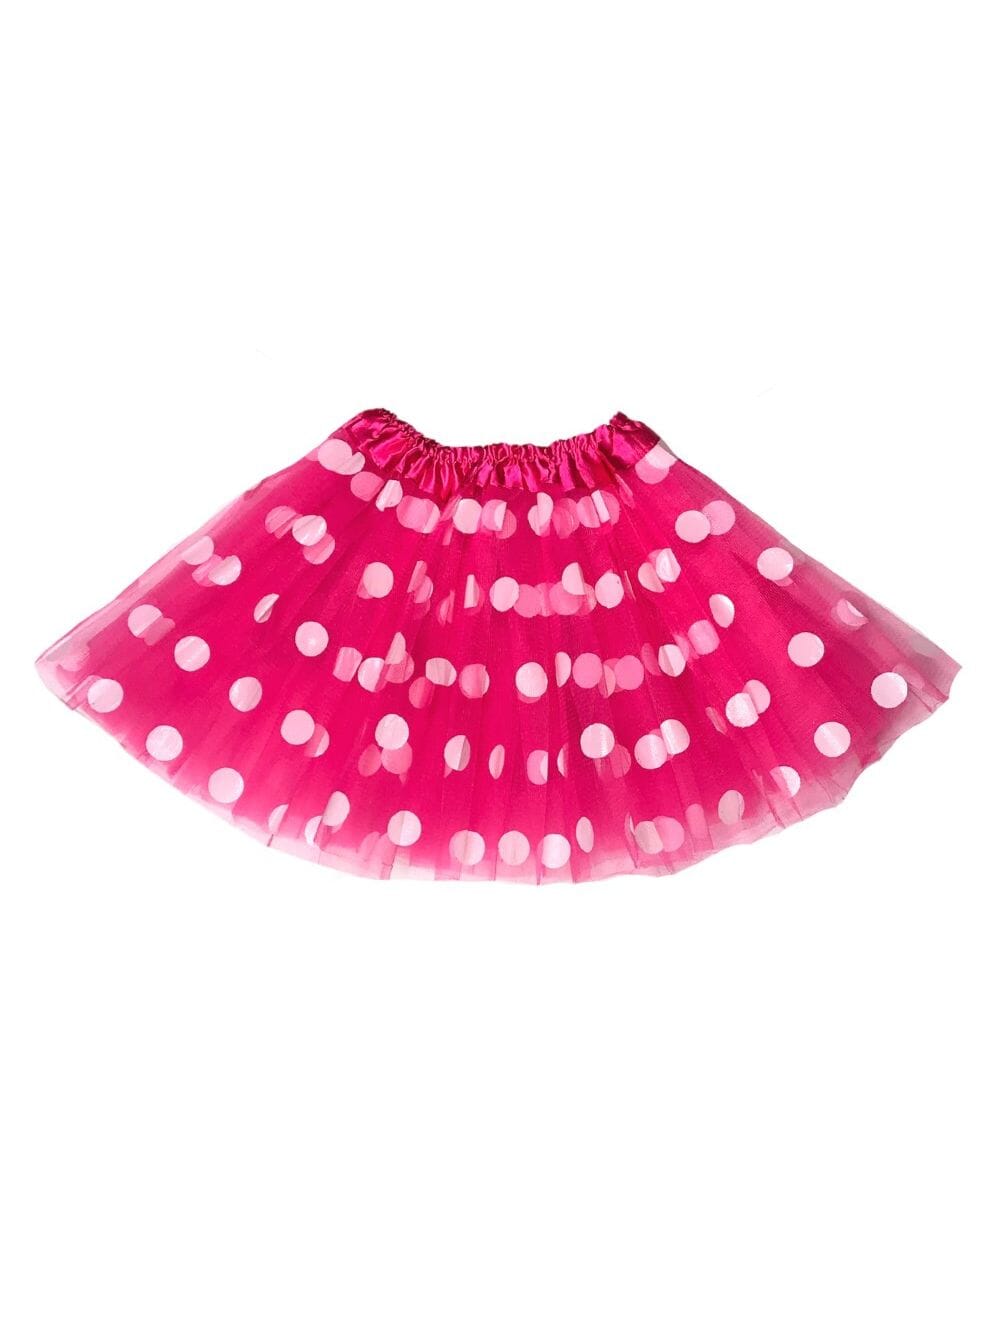 Neon Pink and White Polka Dot Tutu Skirt Costume for Girls, Women, Plus - Sydney So Sweet